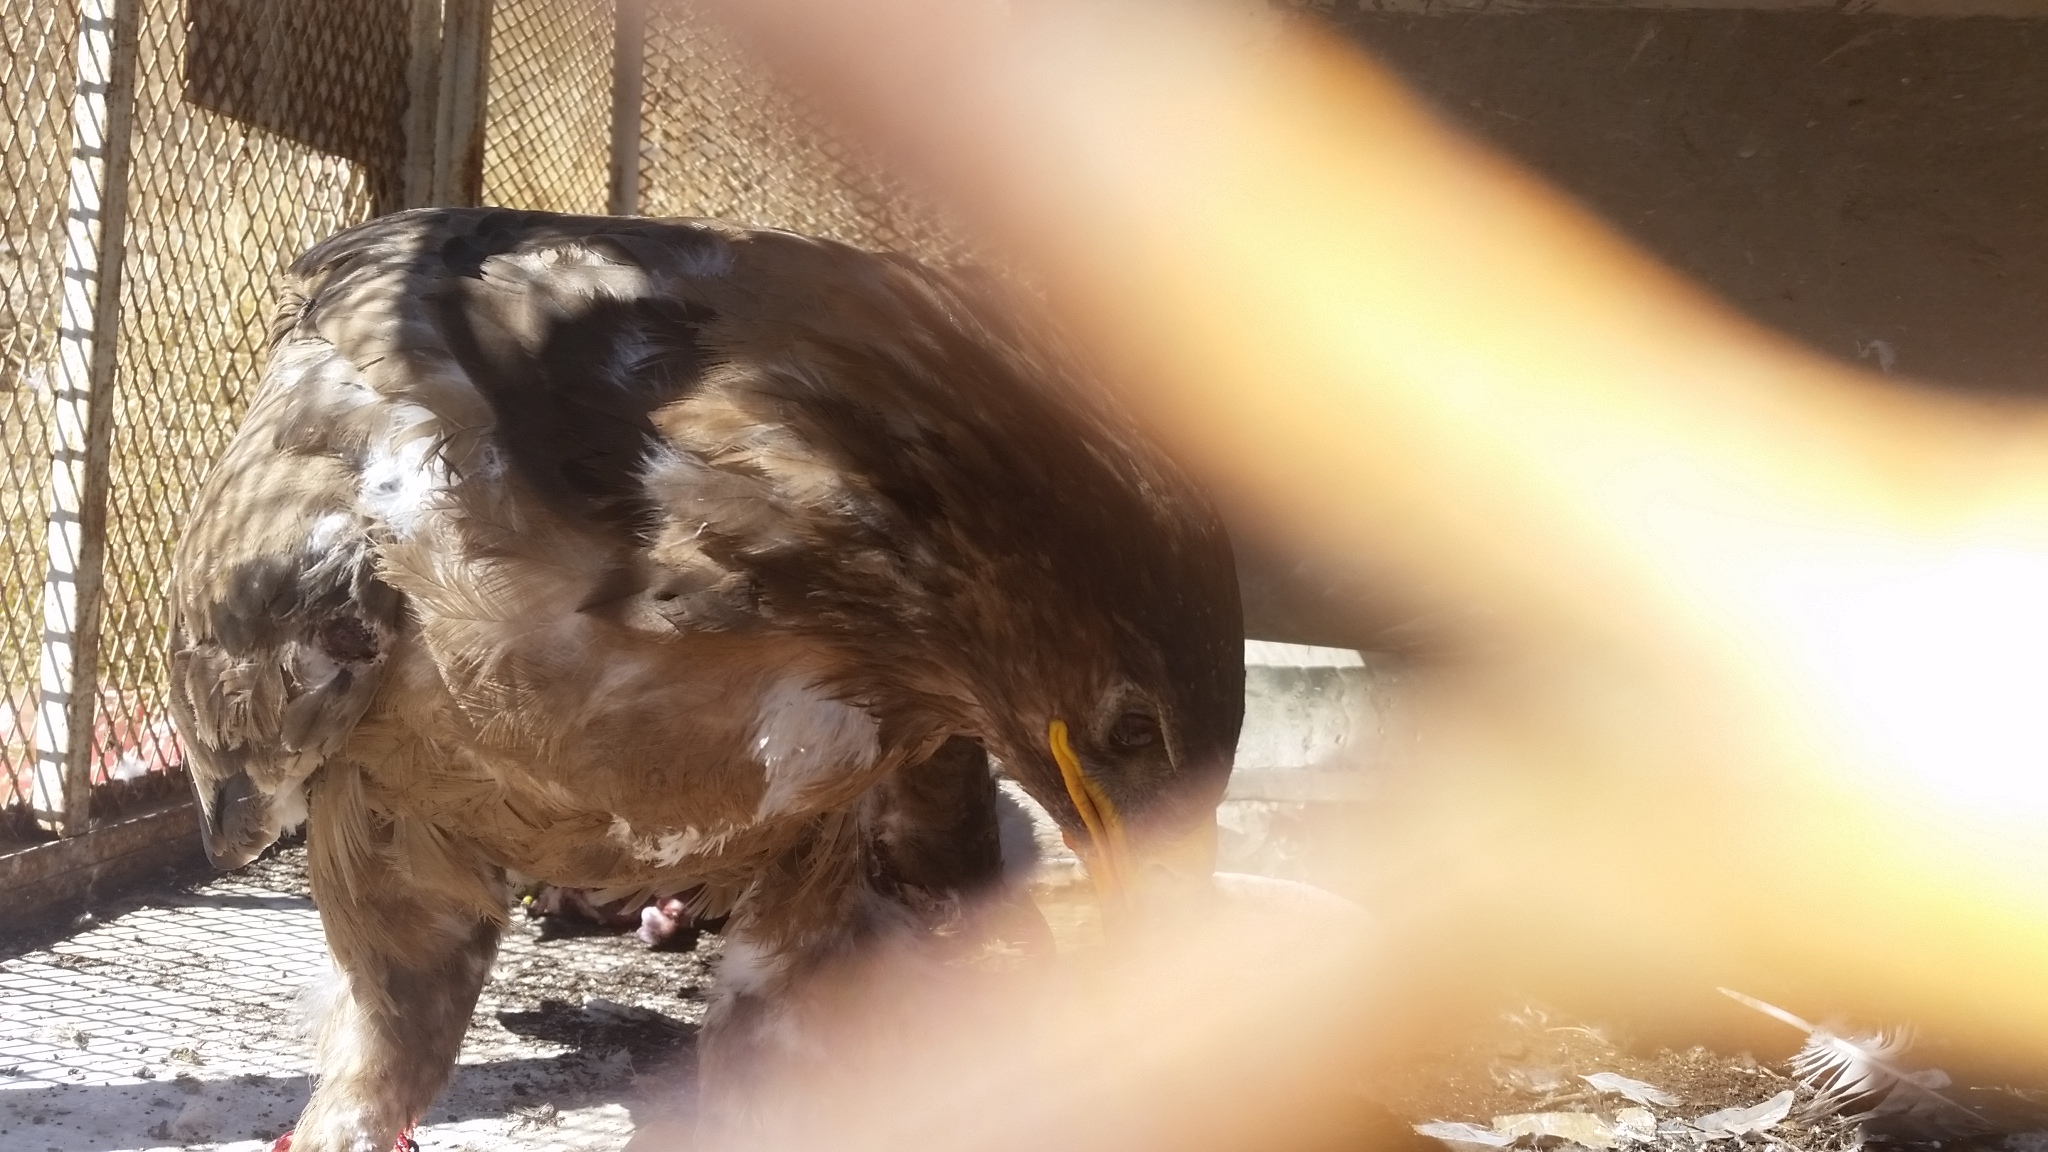 ibb zoo eagle eating 18 NOV 2018 by hisham for OWAP-AR food provider.jpg